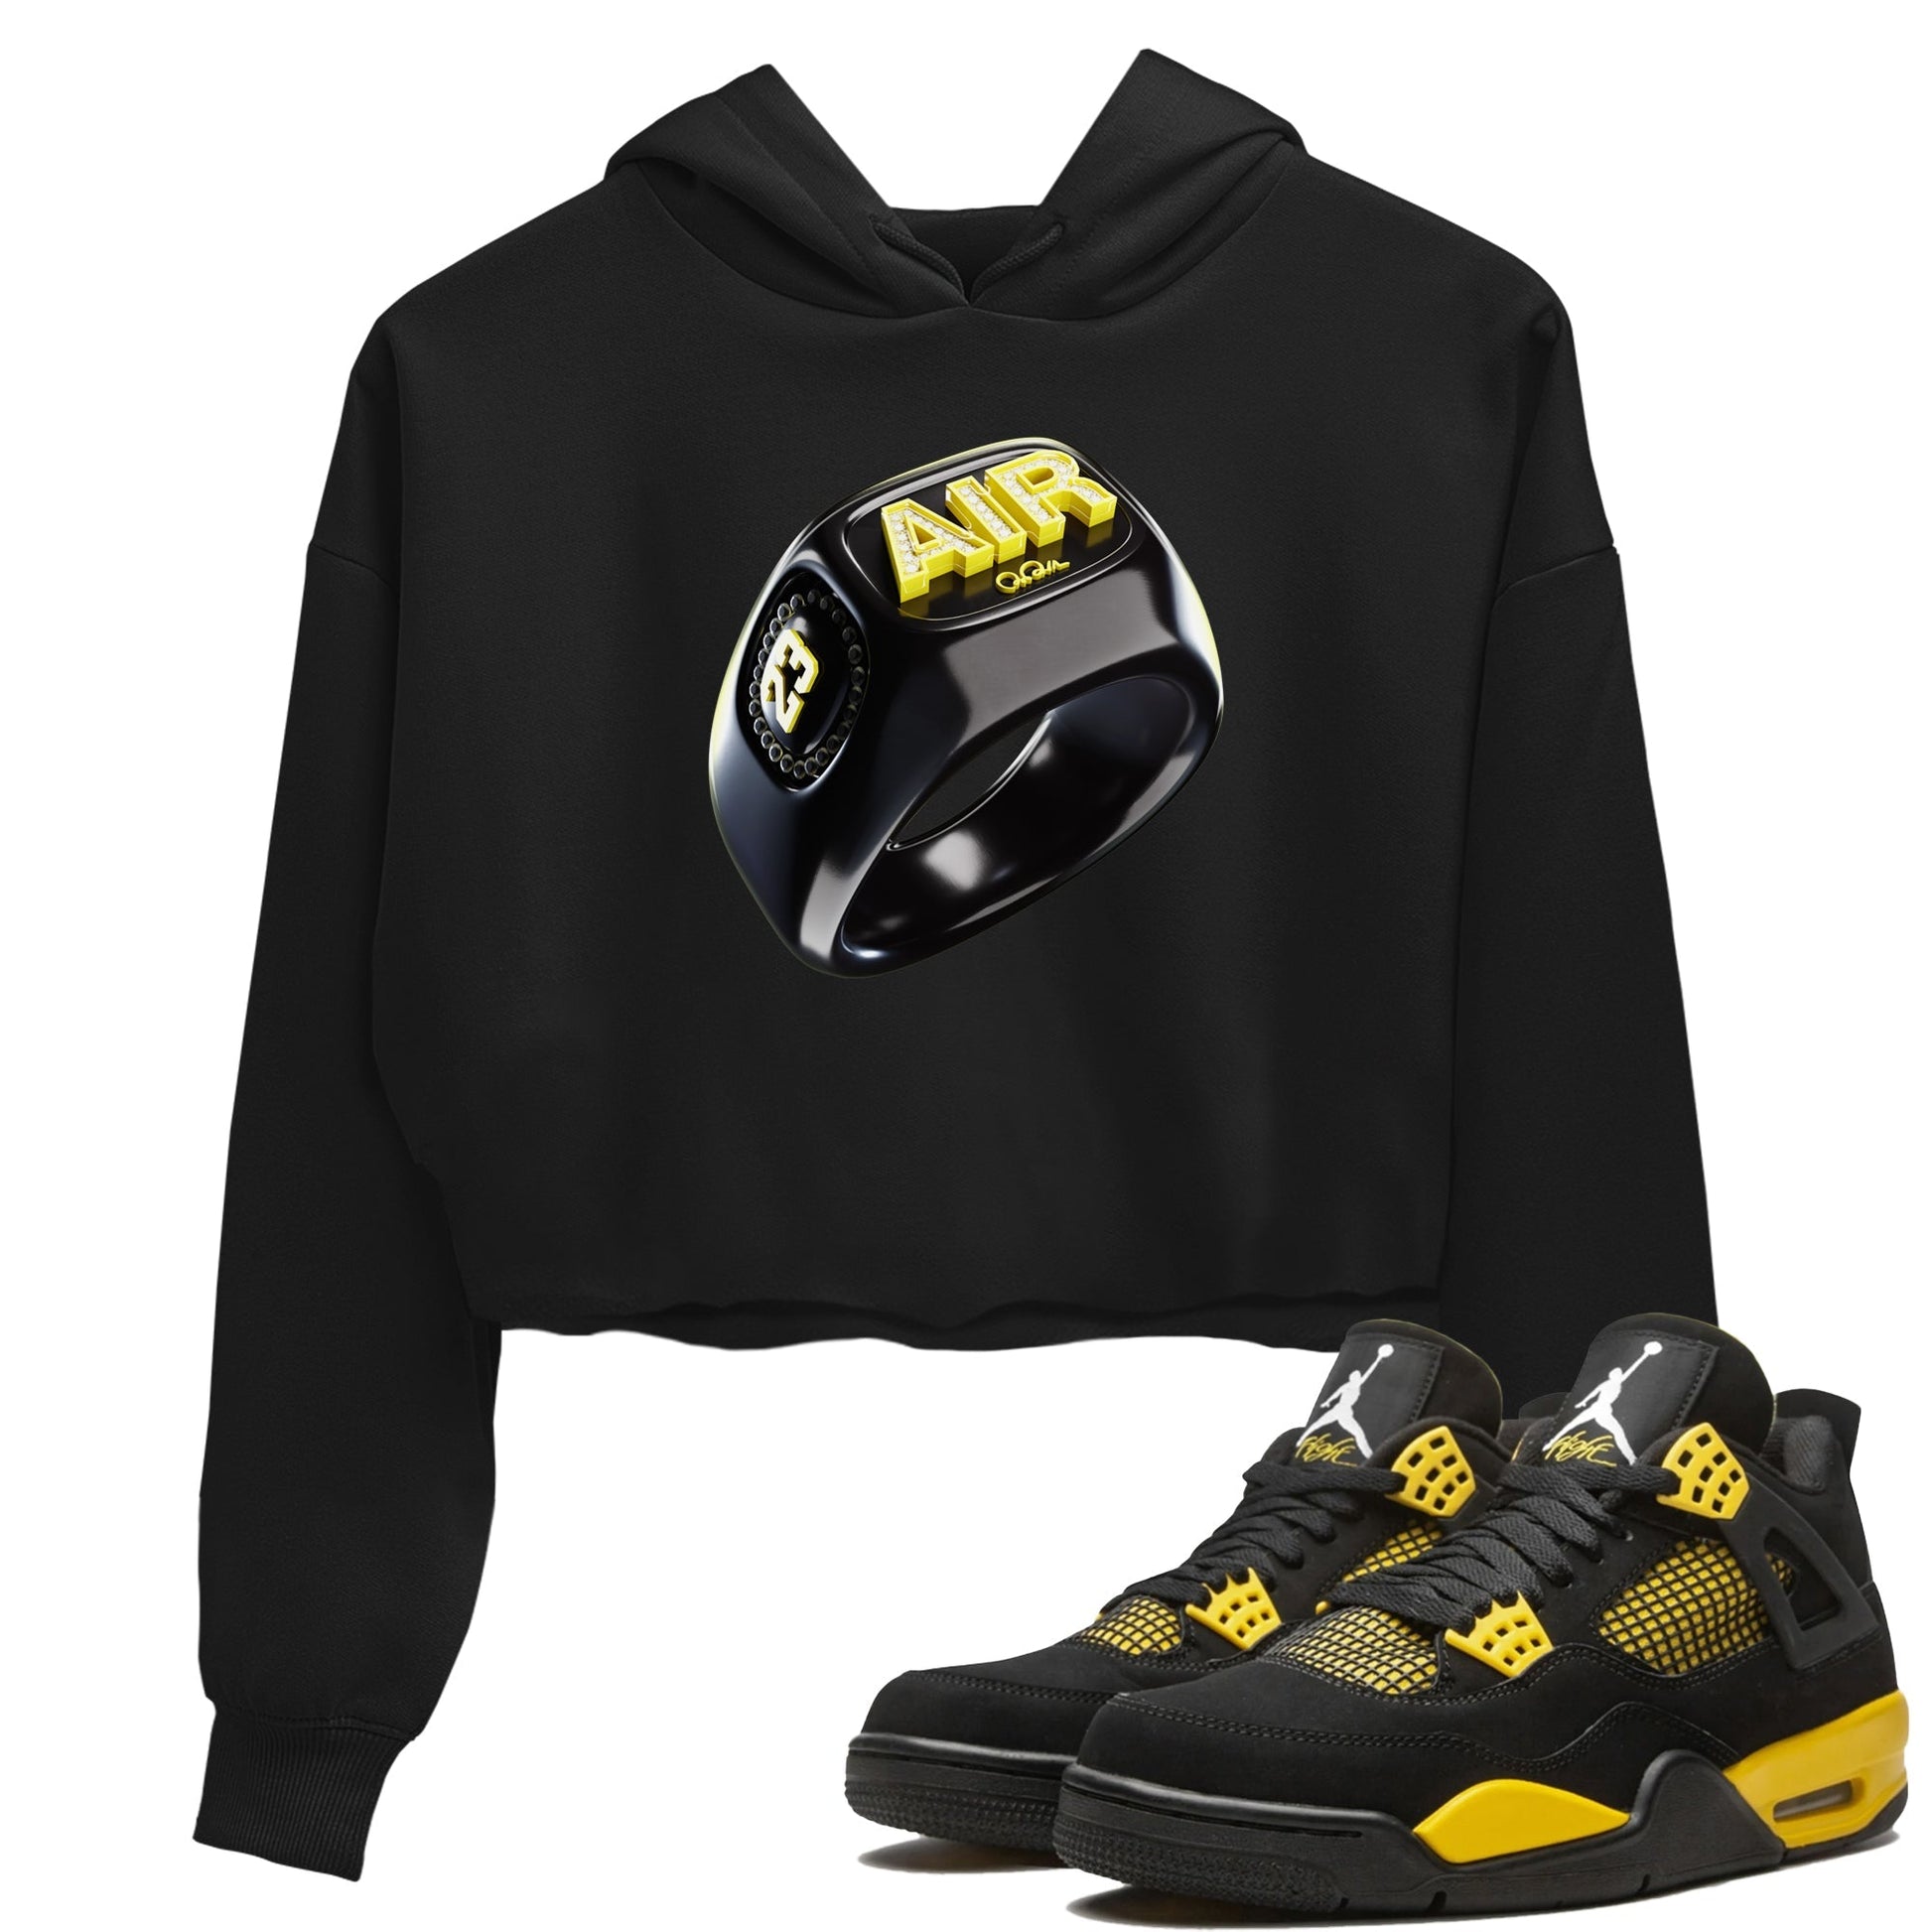 Air Jordan 4 Thunder Sneaker Tees Drip Gear Zone Diamond Ring Sneaker Tees AJ4 Thunder Jumpman Shirt Women's Shirts Black 1